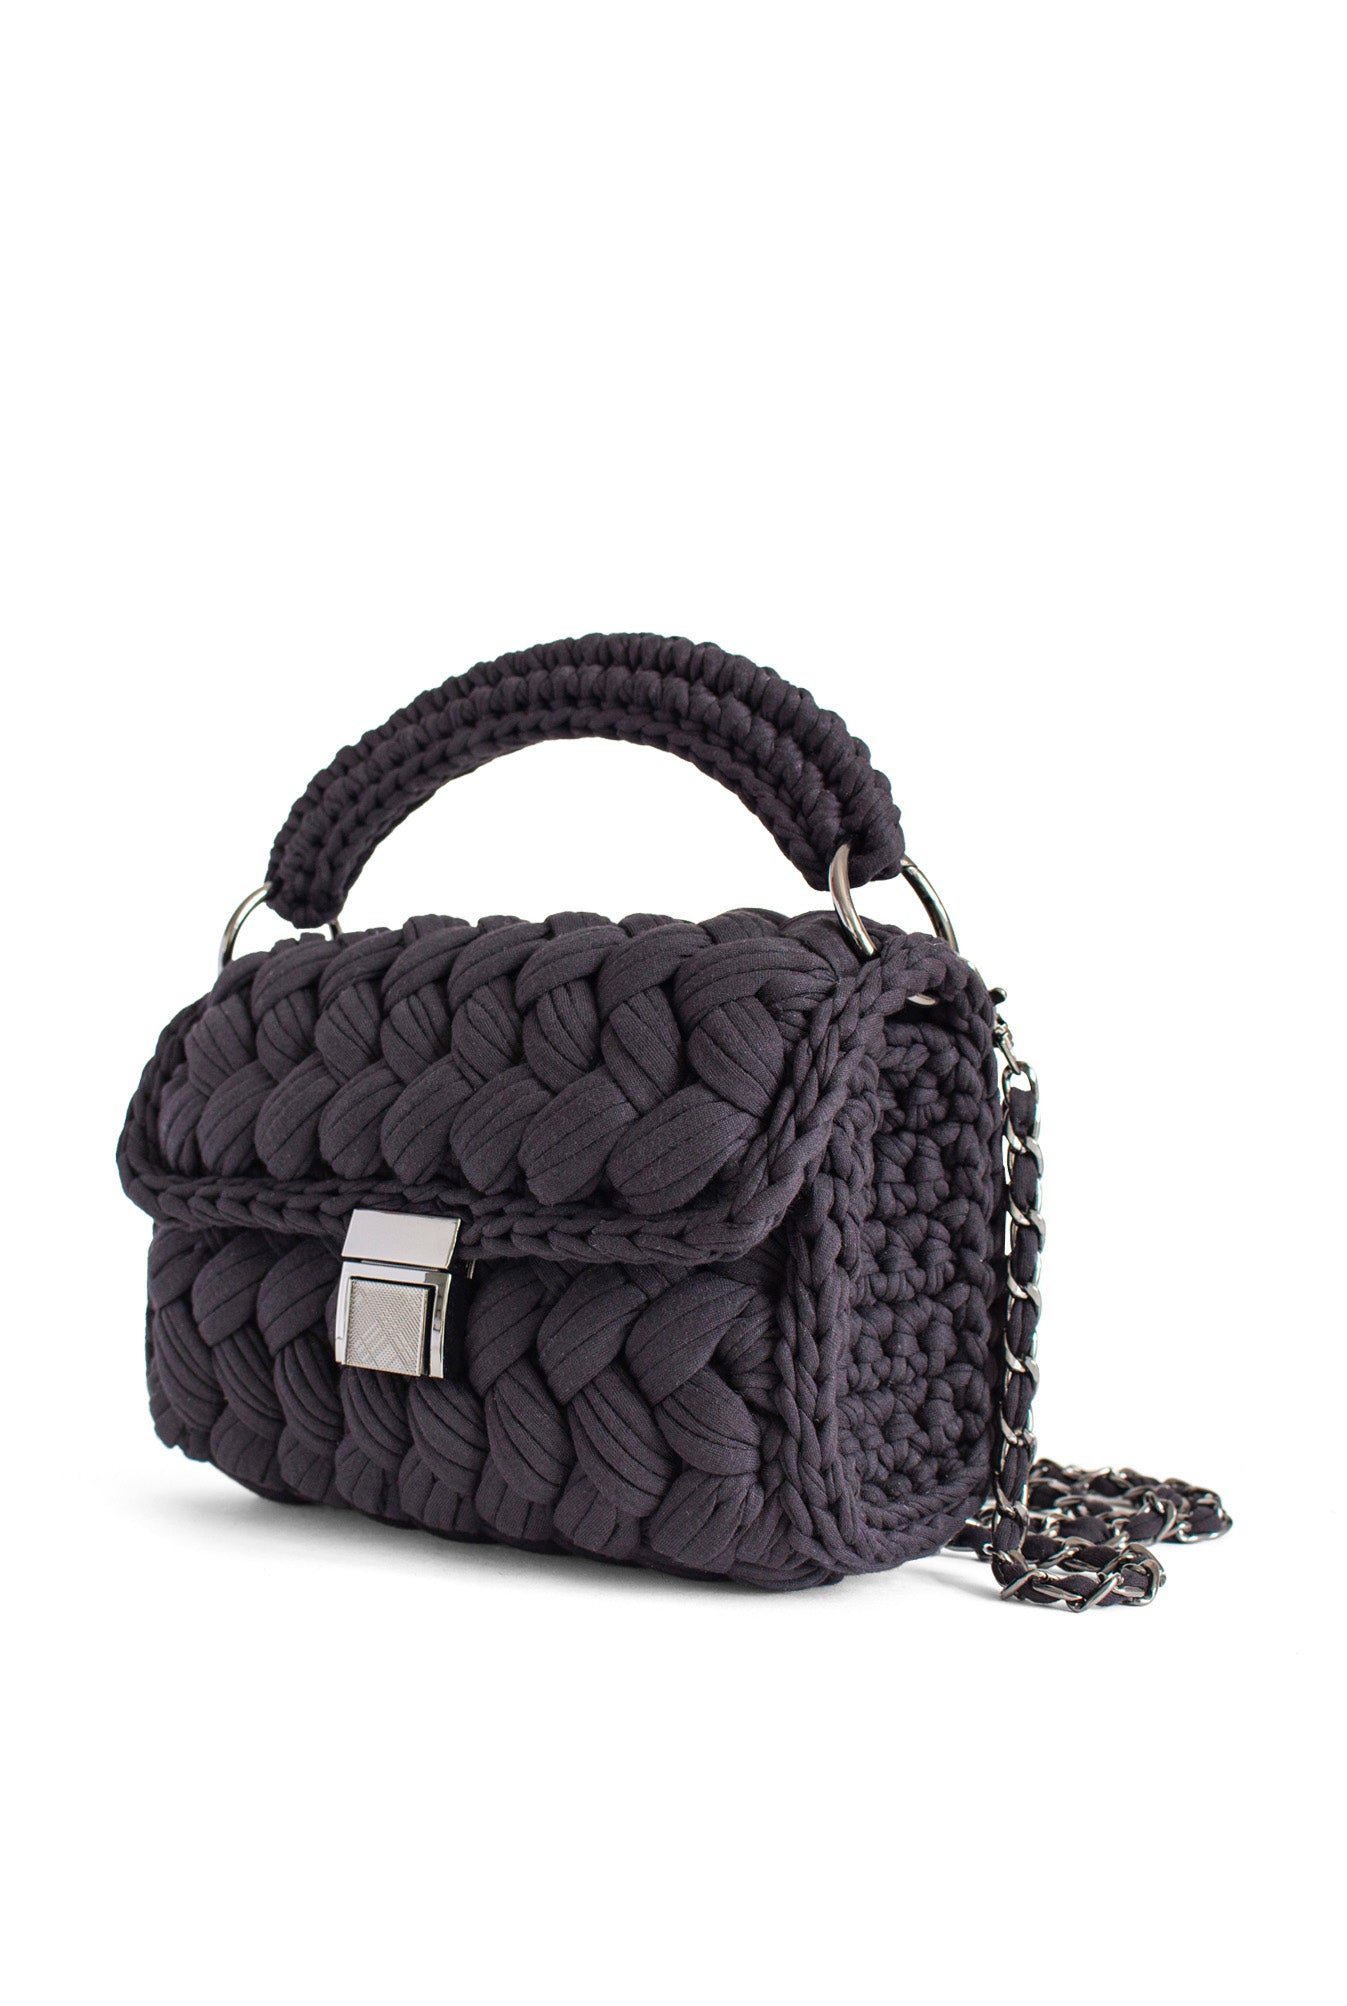 Black Braided Handbag